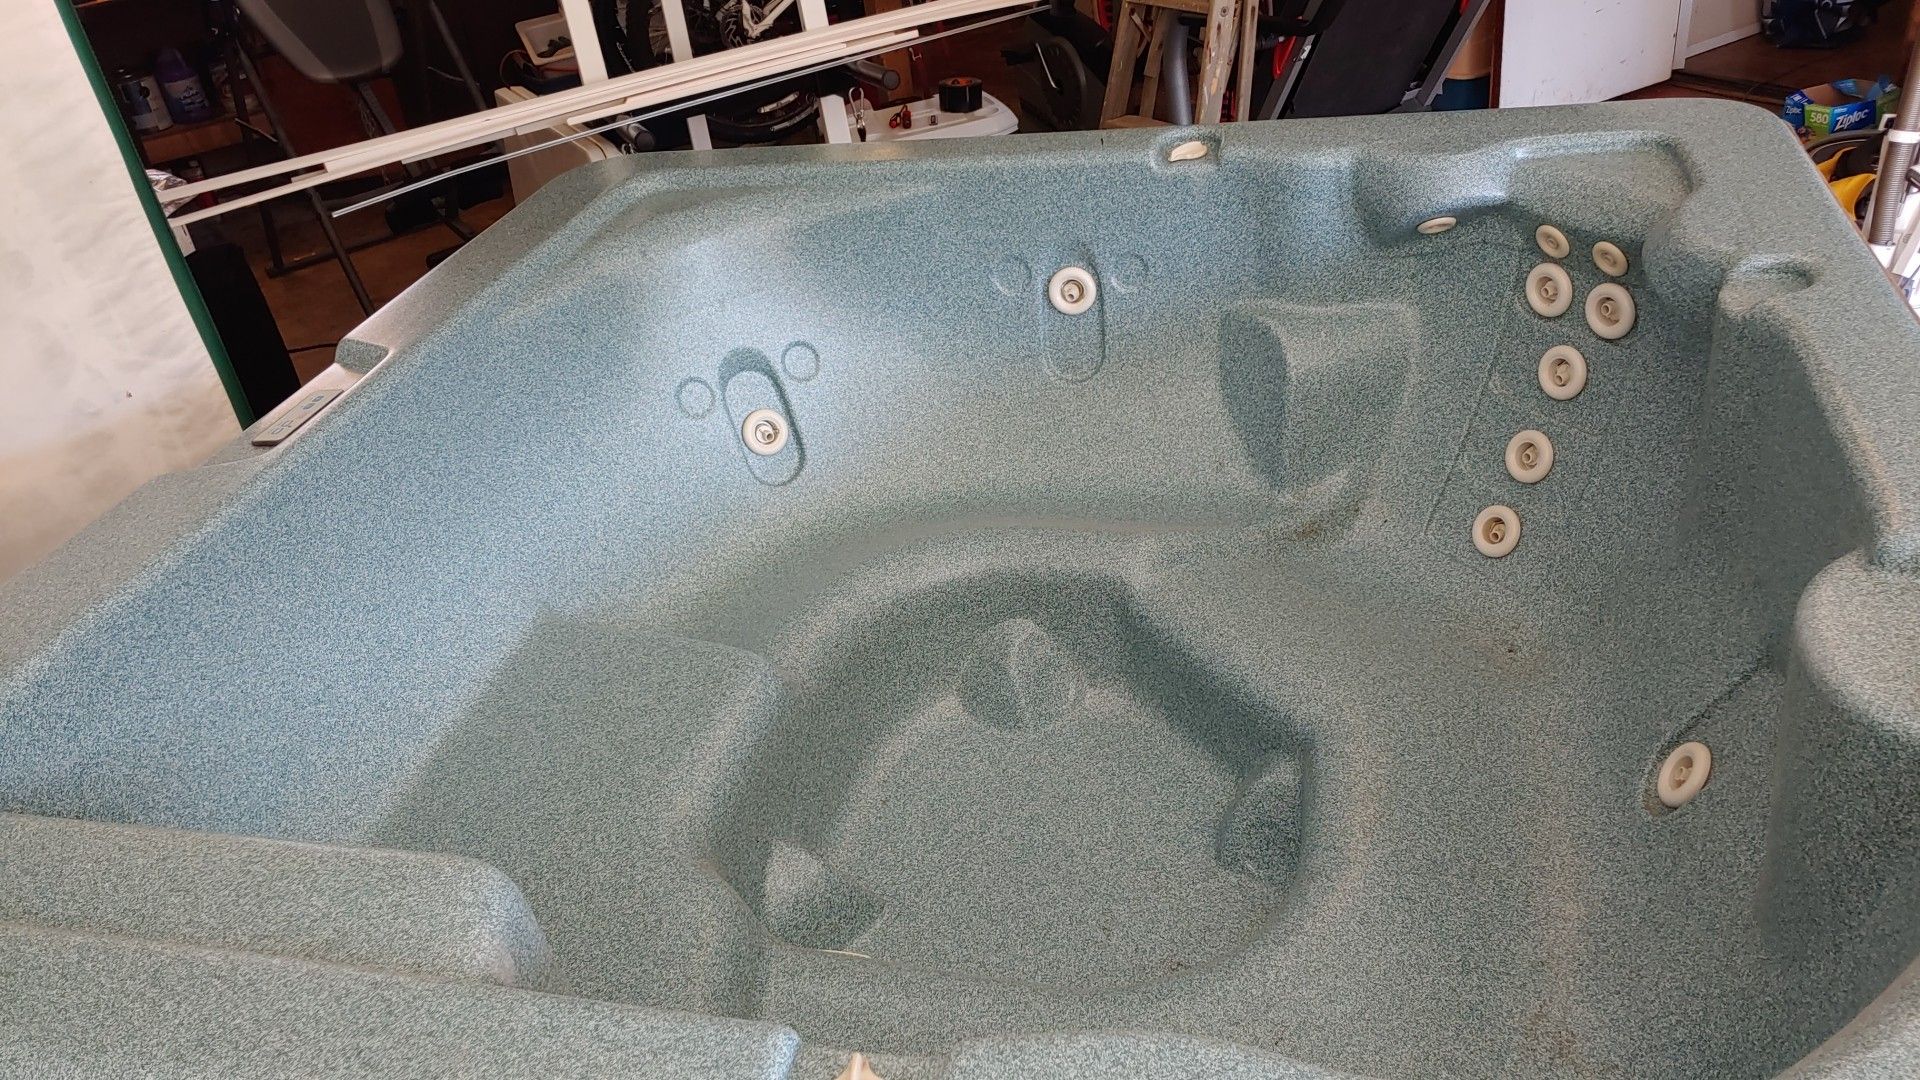 Hot tub shell